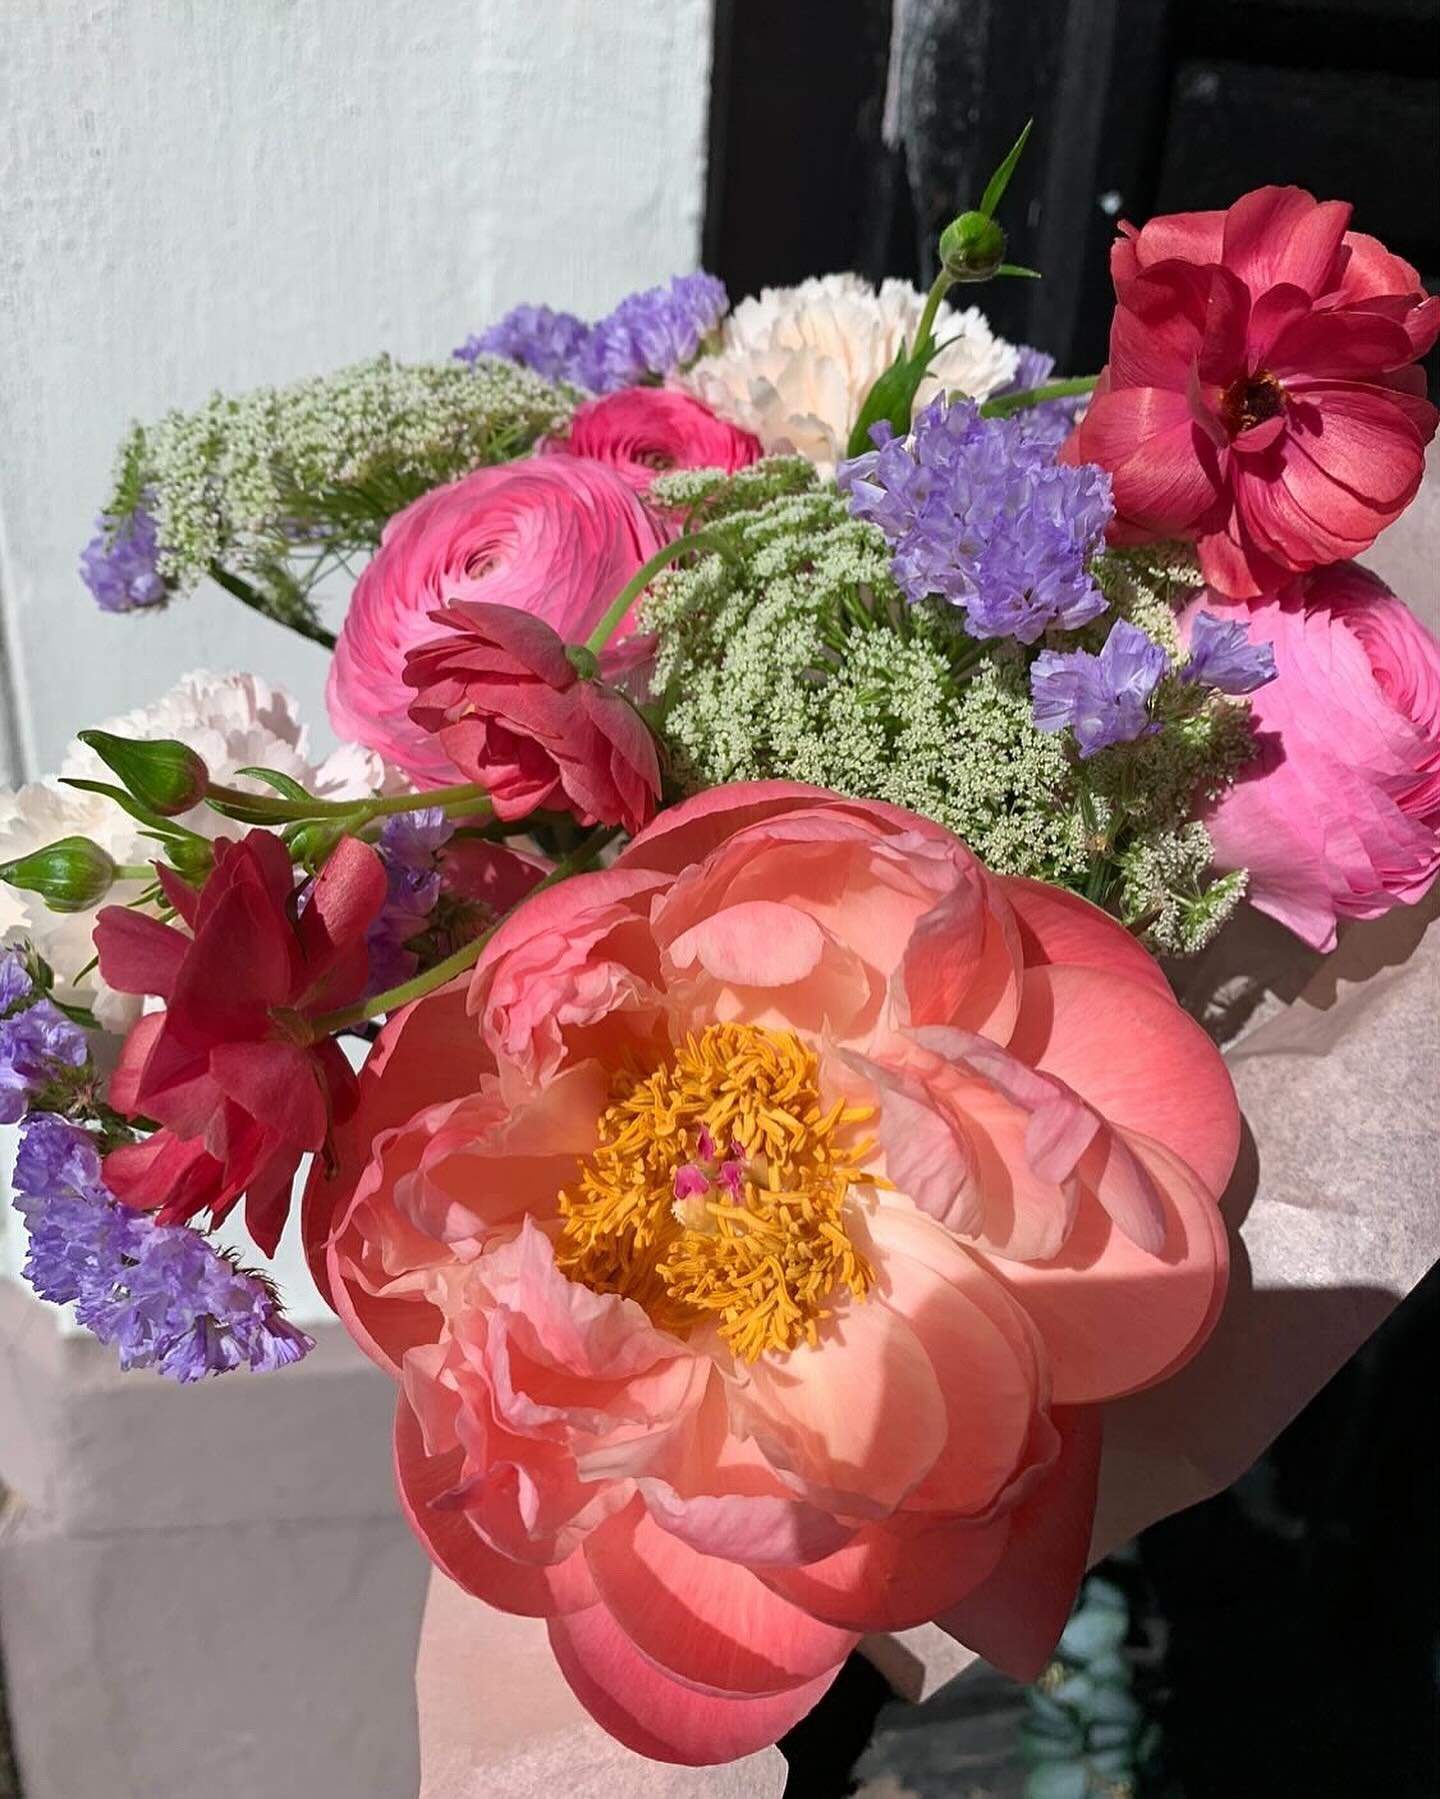 Helgebuketten fra oss denne uken 🌸💗🙌🏻

299,- 
Gratis lokal levering 

Ha en str&aring;lende helg! Klem fra Randi, Serine og Adeline 

#helgebuketten #love #flowers #weekend @randilauvdal_blomster